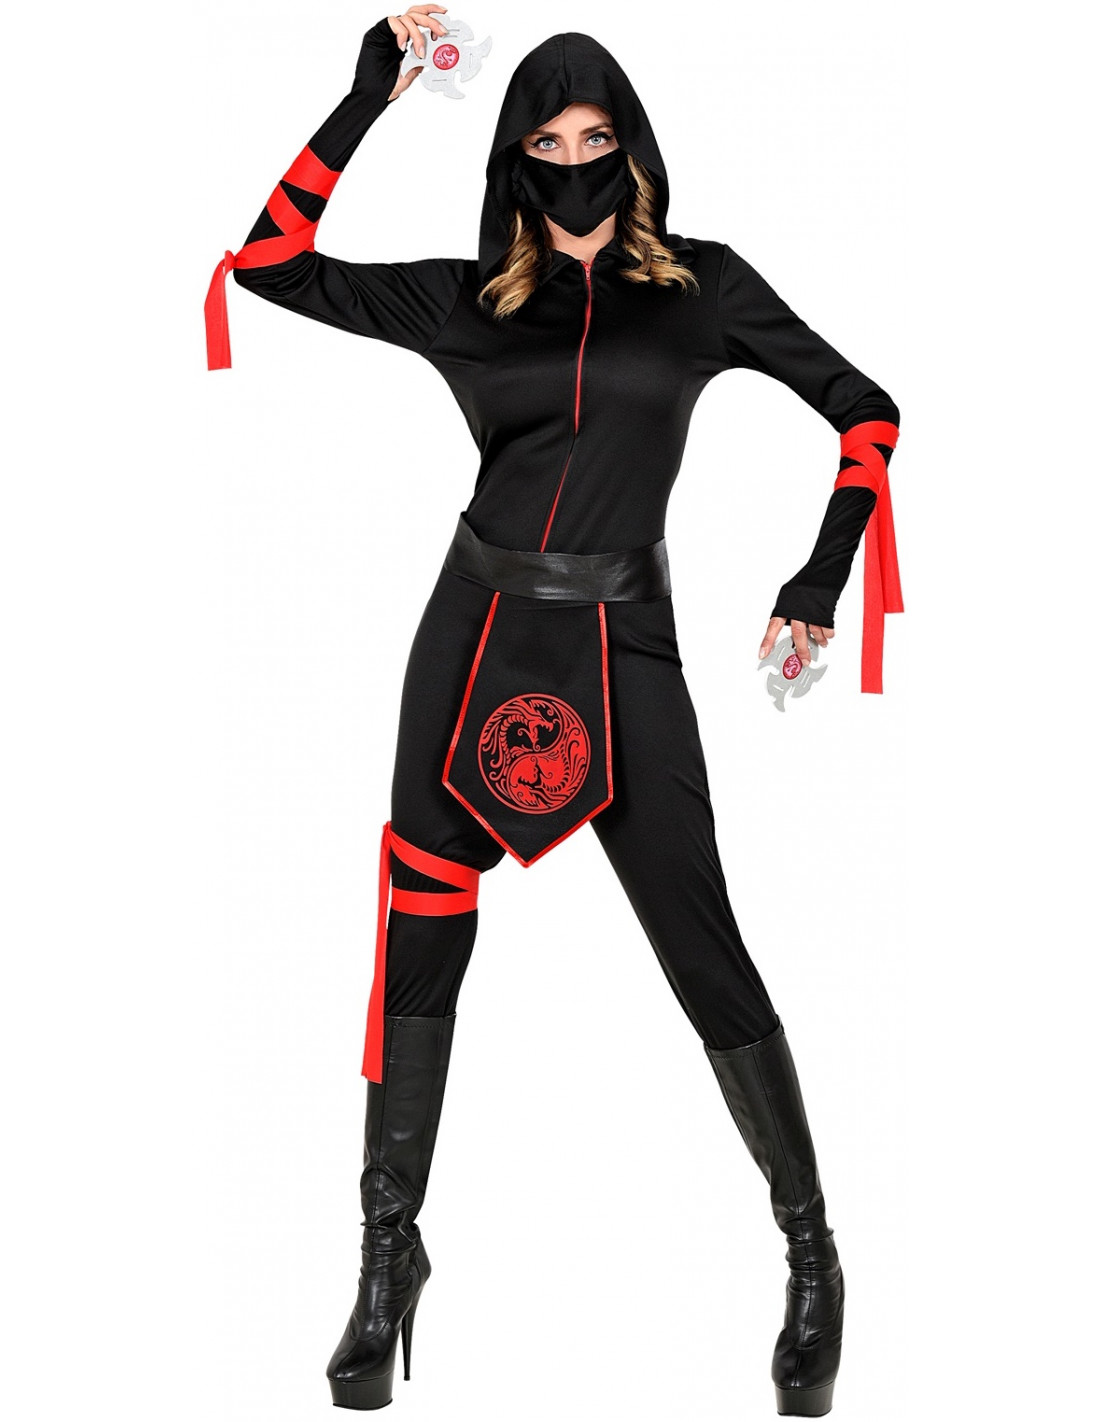 Cómo hacer un traje de ninja casero?